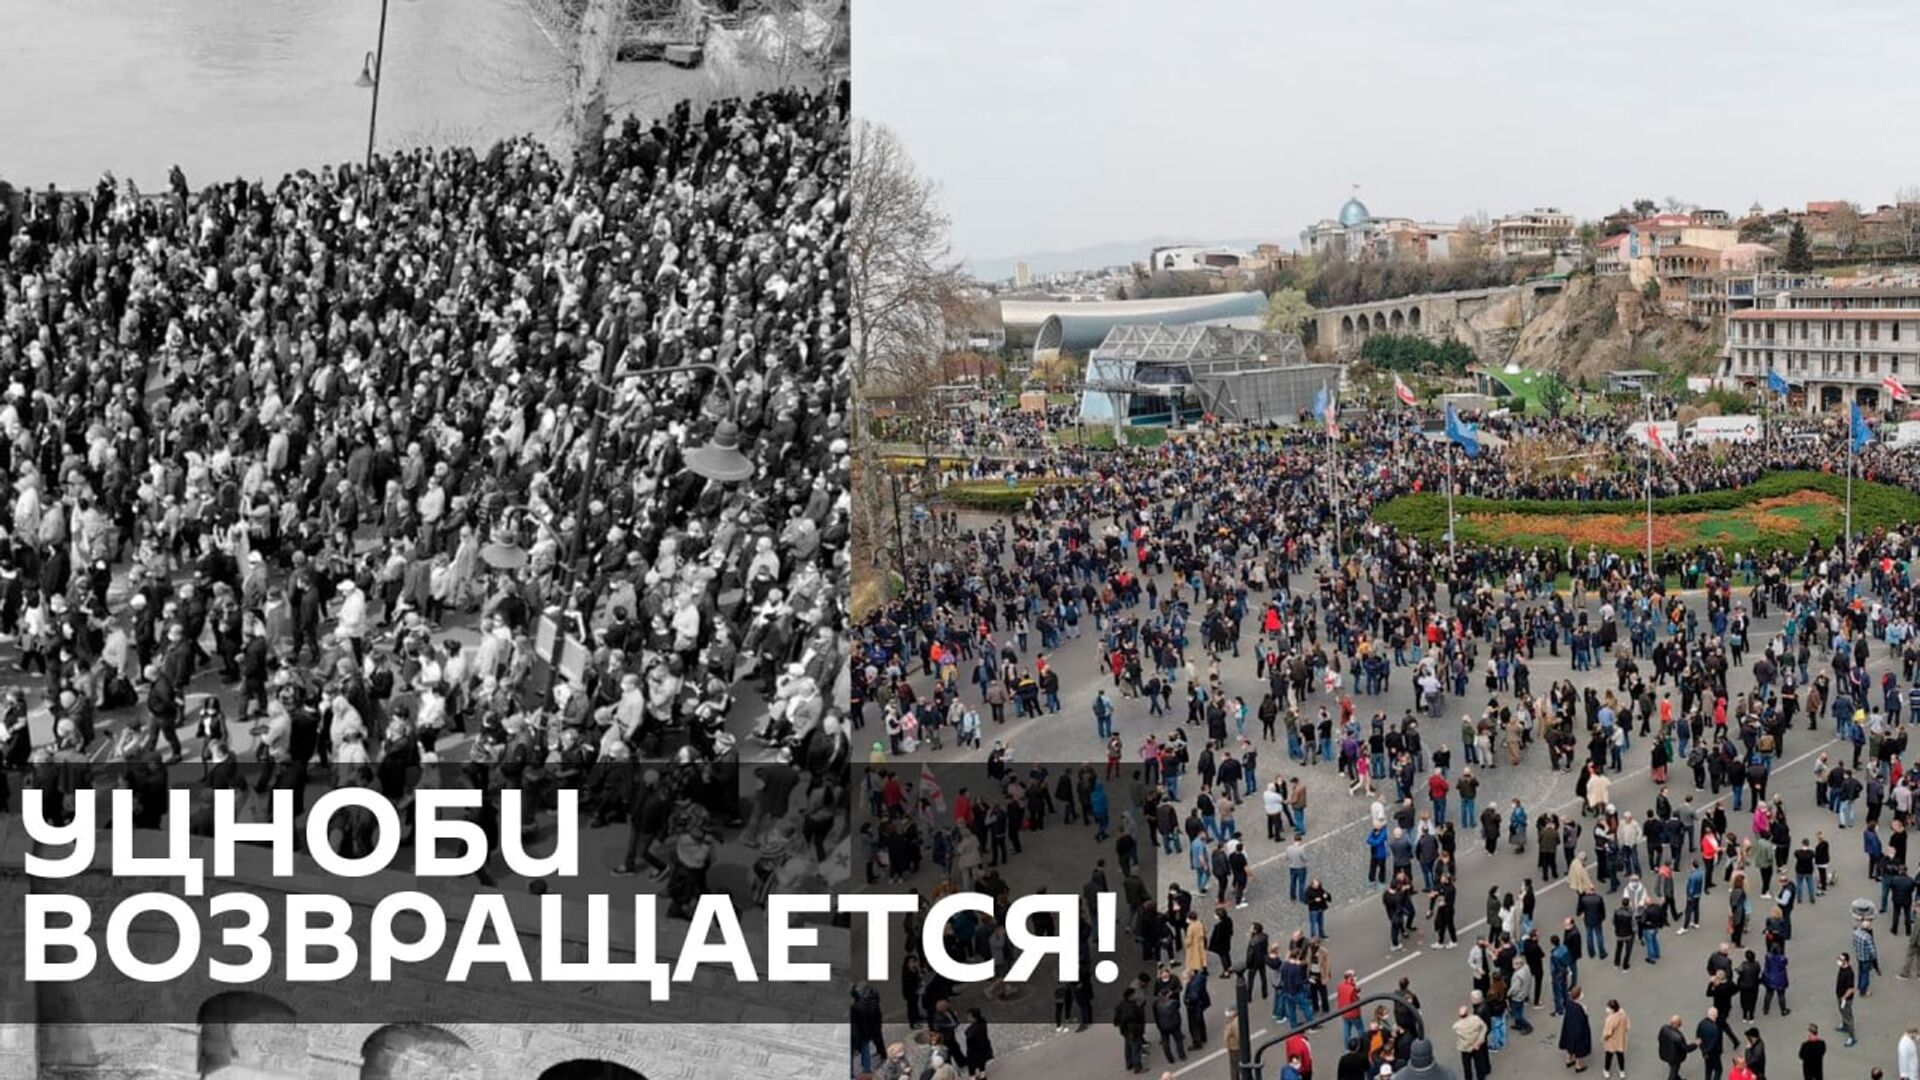 Мэрия Тбилиси: Уцноби будет оштрафован за вандализм - Sputnik Грузия, 1920, 09.04.2021